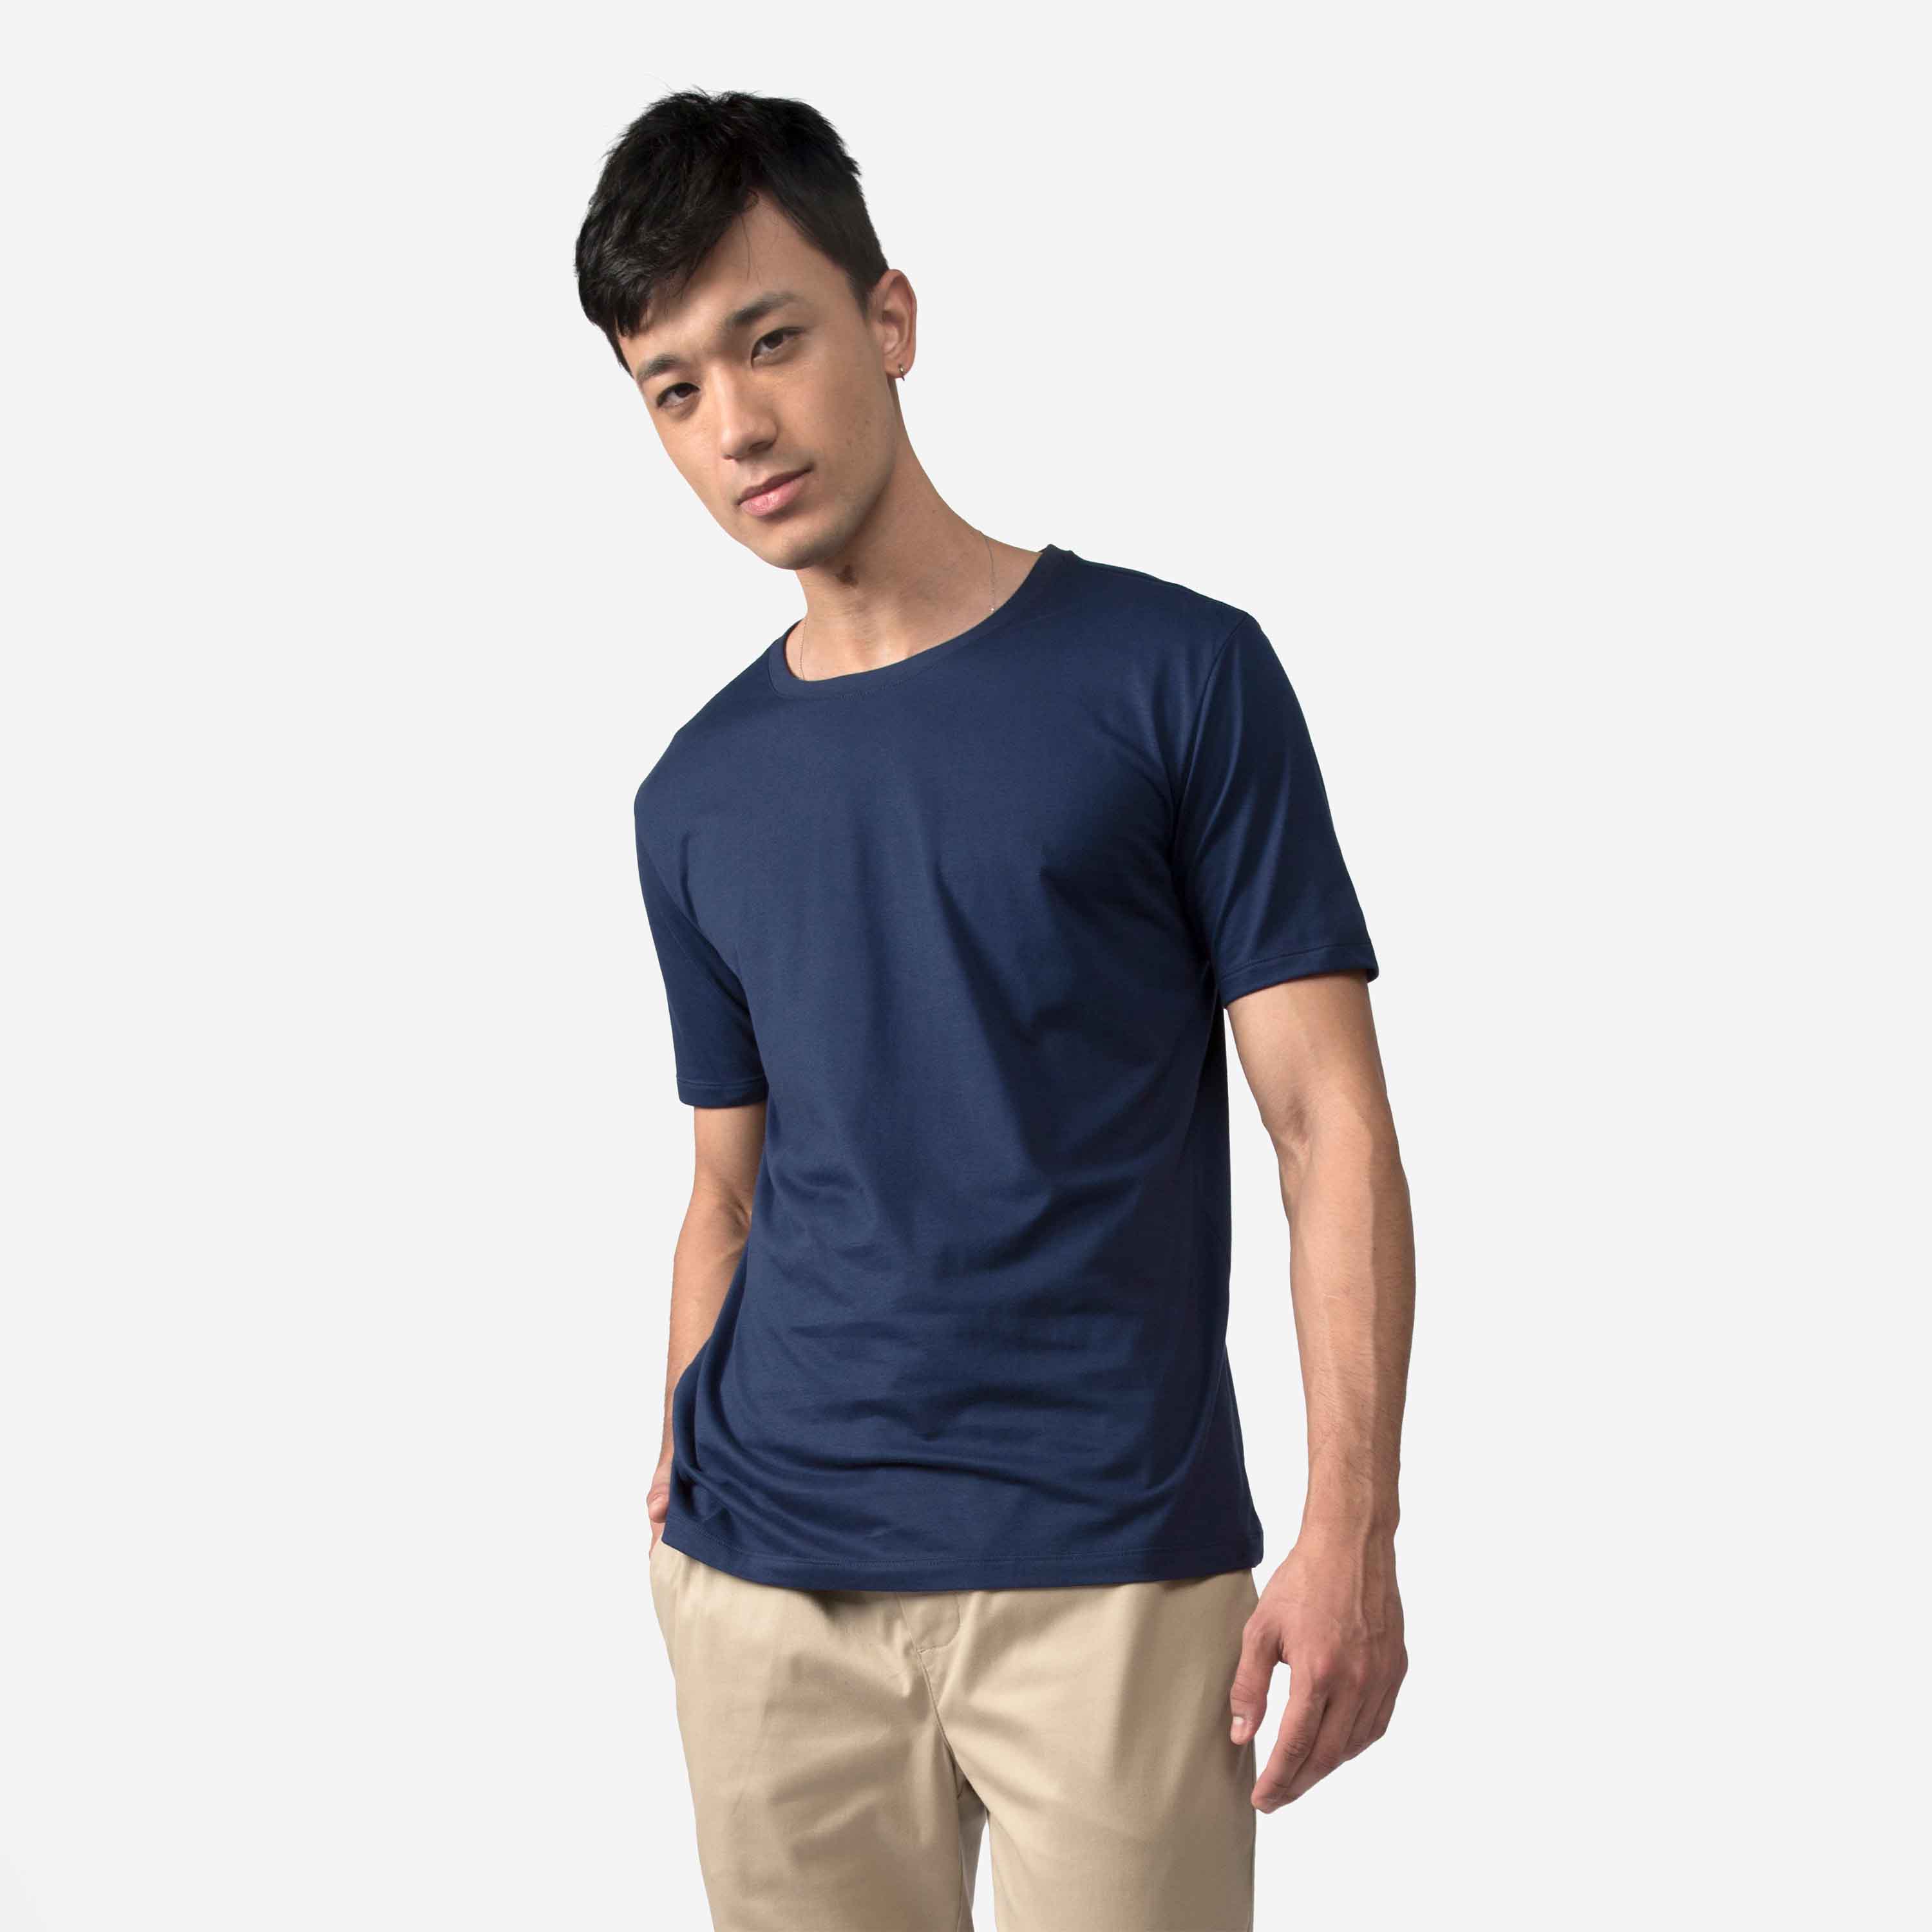 Camiseta Algodão Premium Masculina Everyday Collection - Azul Marinho